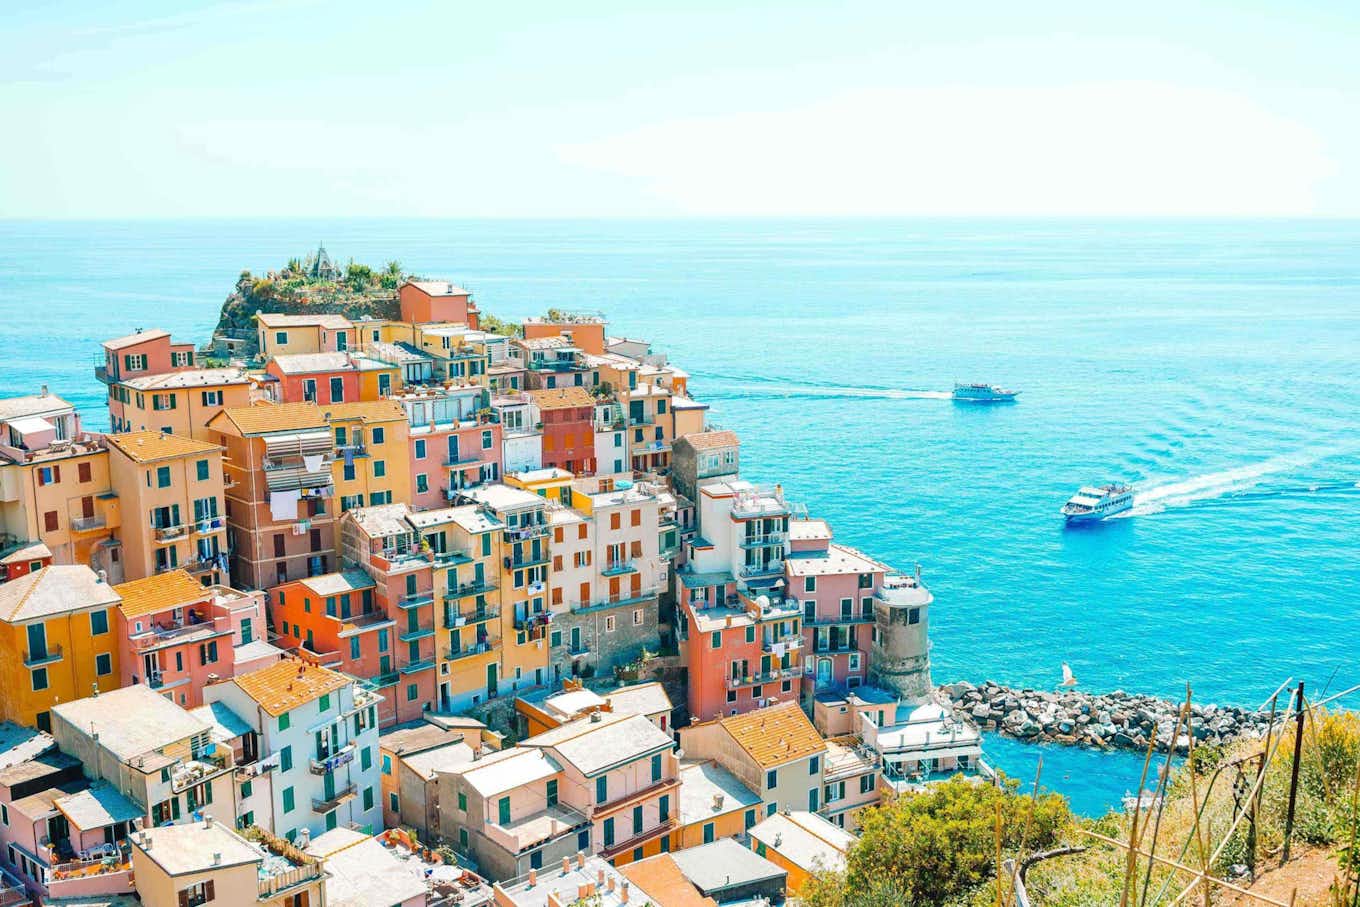 La ciudad y las coloridas casas en Cinque Terre.